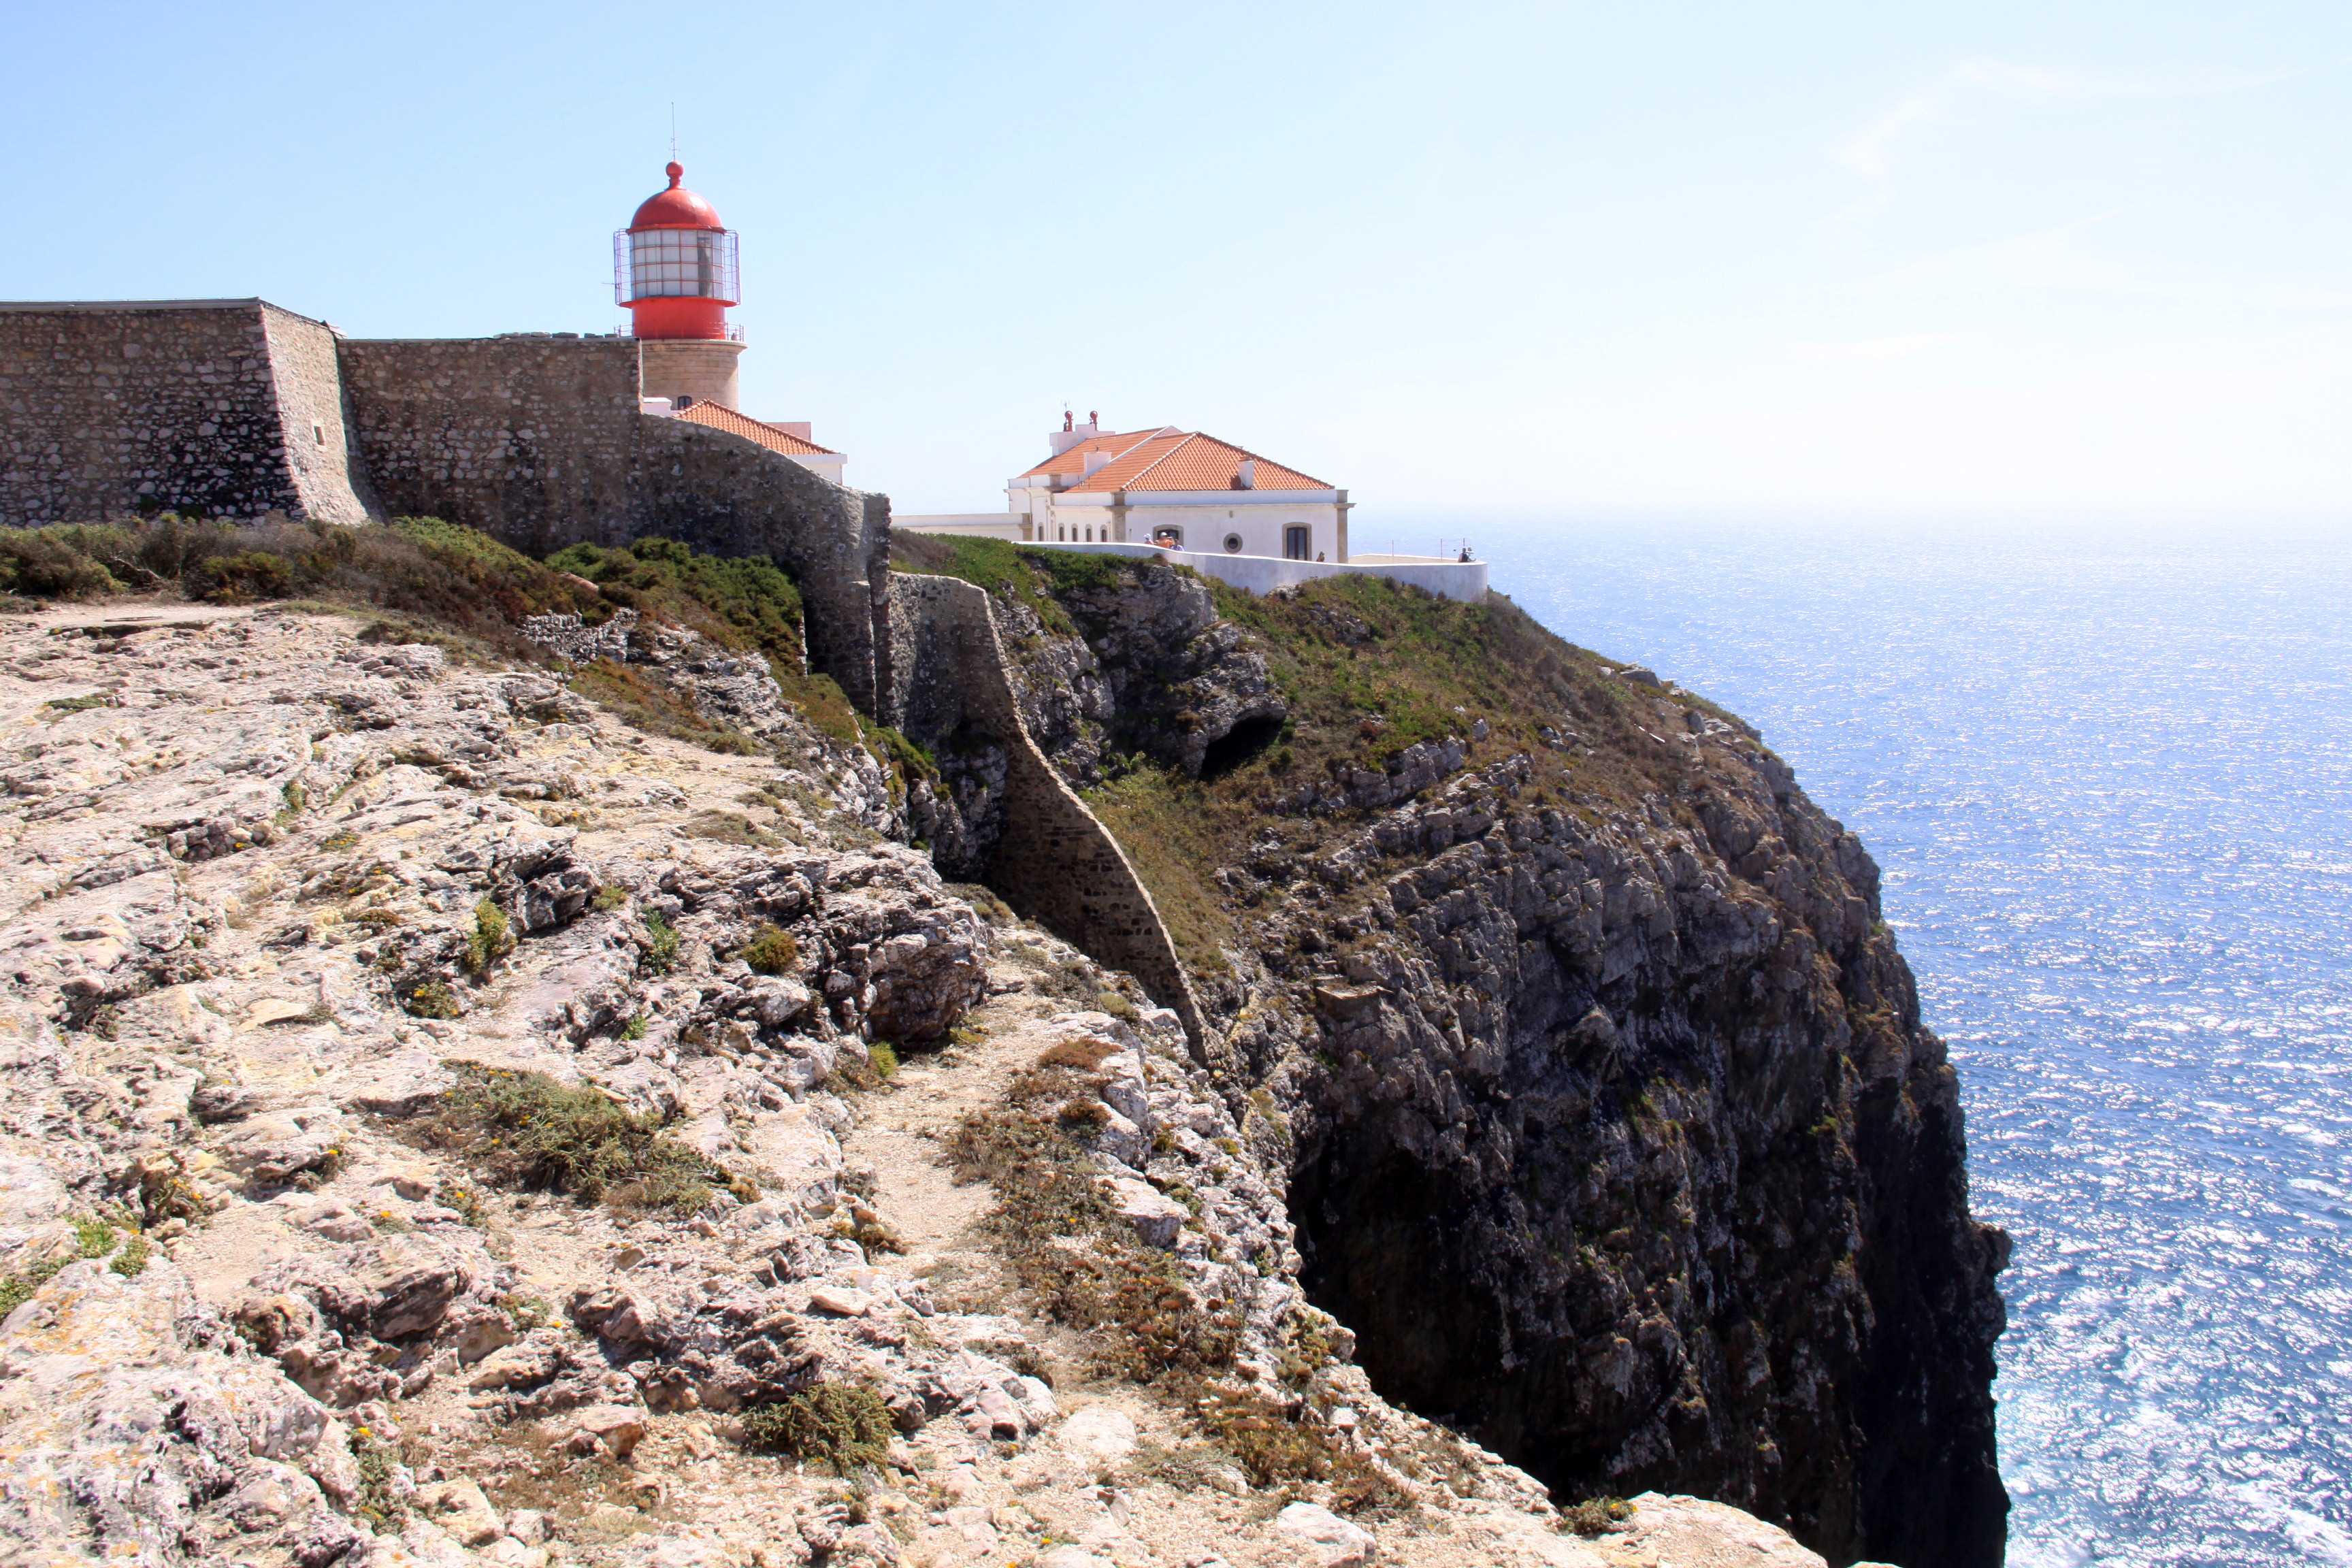 Berühmtes Kap: Cabo de São Vicente war einst das Ende der bekannten Welt. Nun geht hier der Pilgerweg-Mörder um. Foto: dpa/Meyer